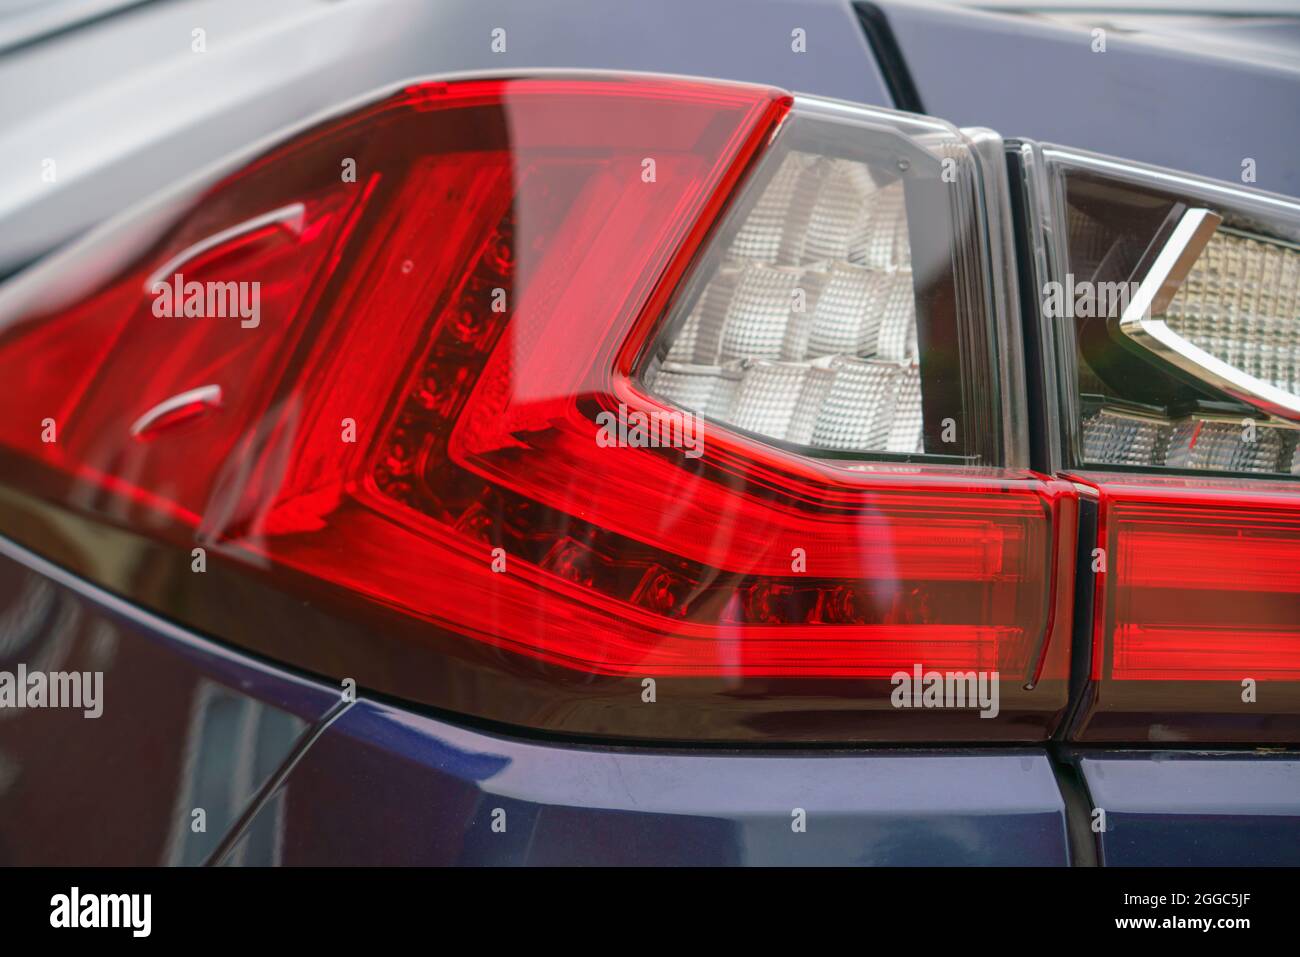 Rückseite des Auto hintere Licht Kofferraum Limousine neue ford  Stockfotografie - Alamy